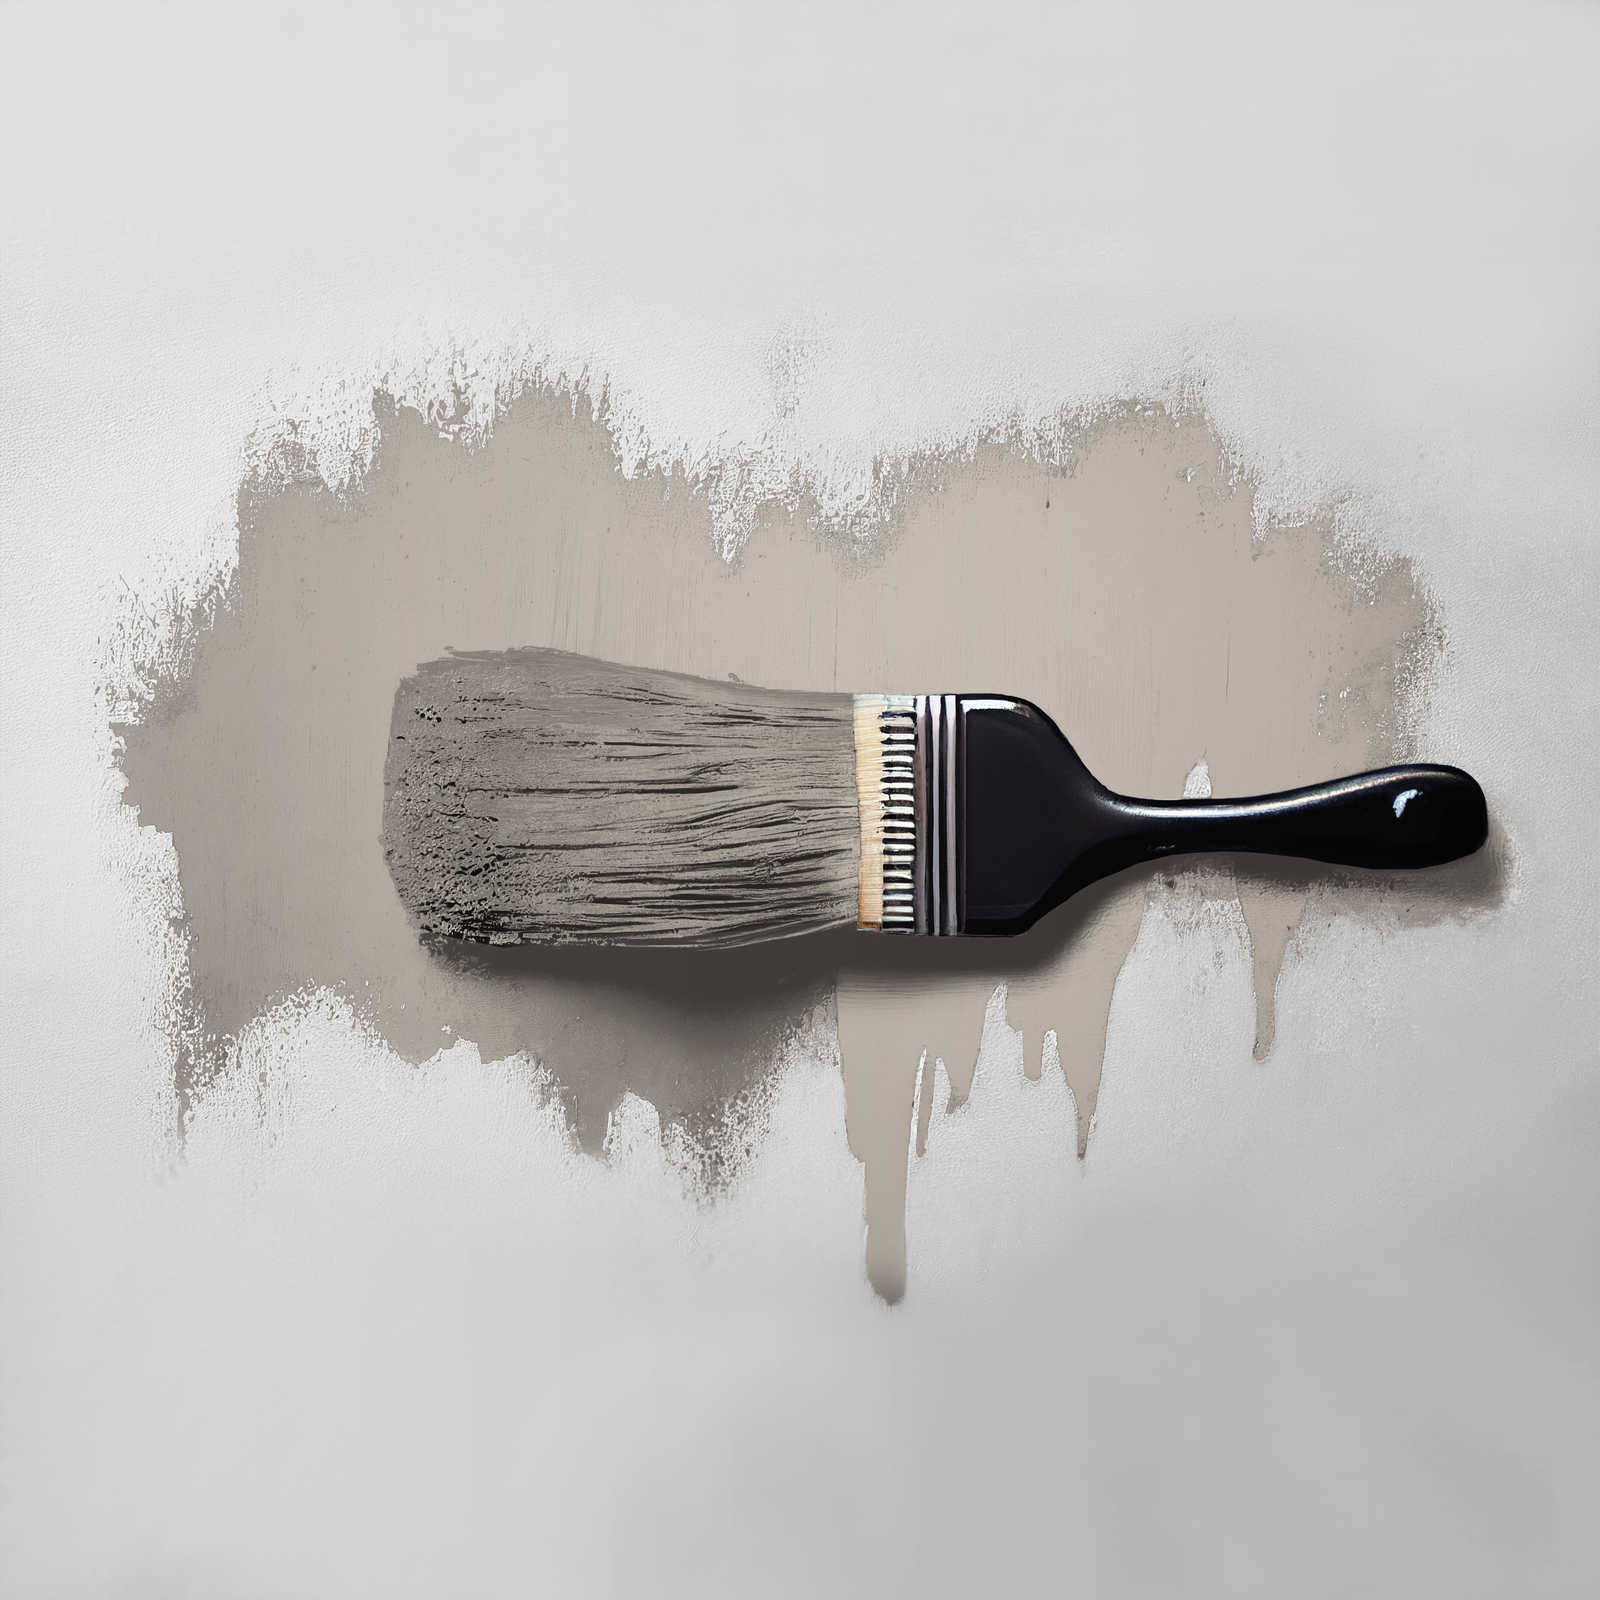             Pittura murale TCK1018 »Whole Grain« in grigio tipico – 2,5 litri
        